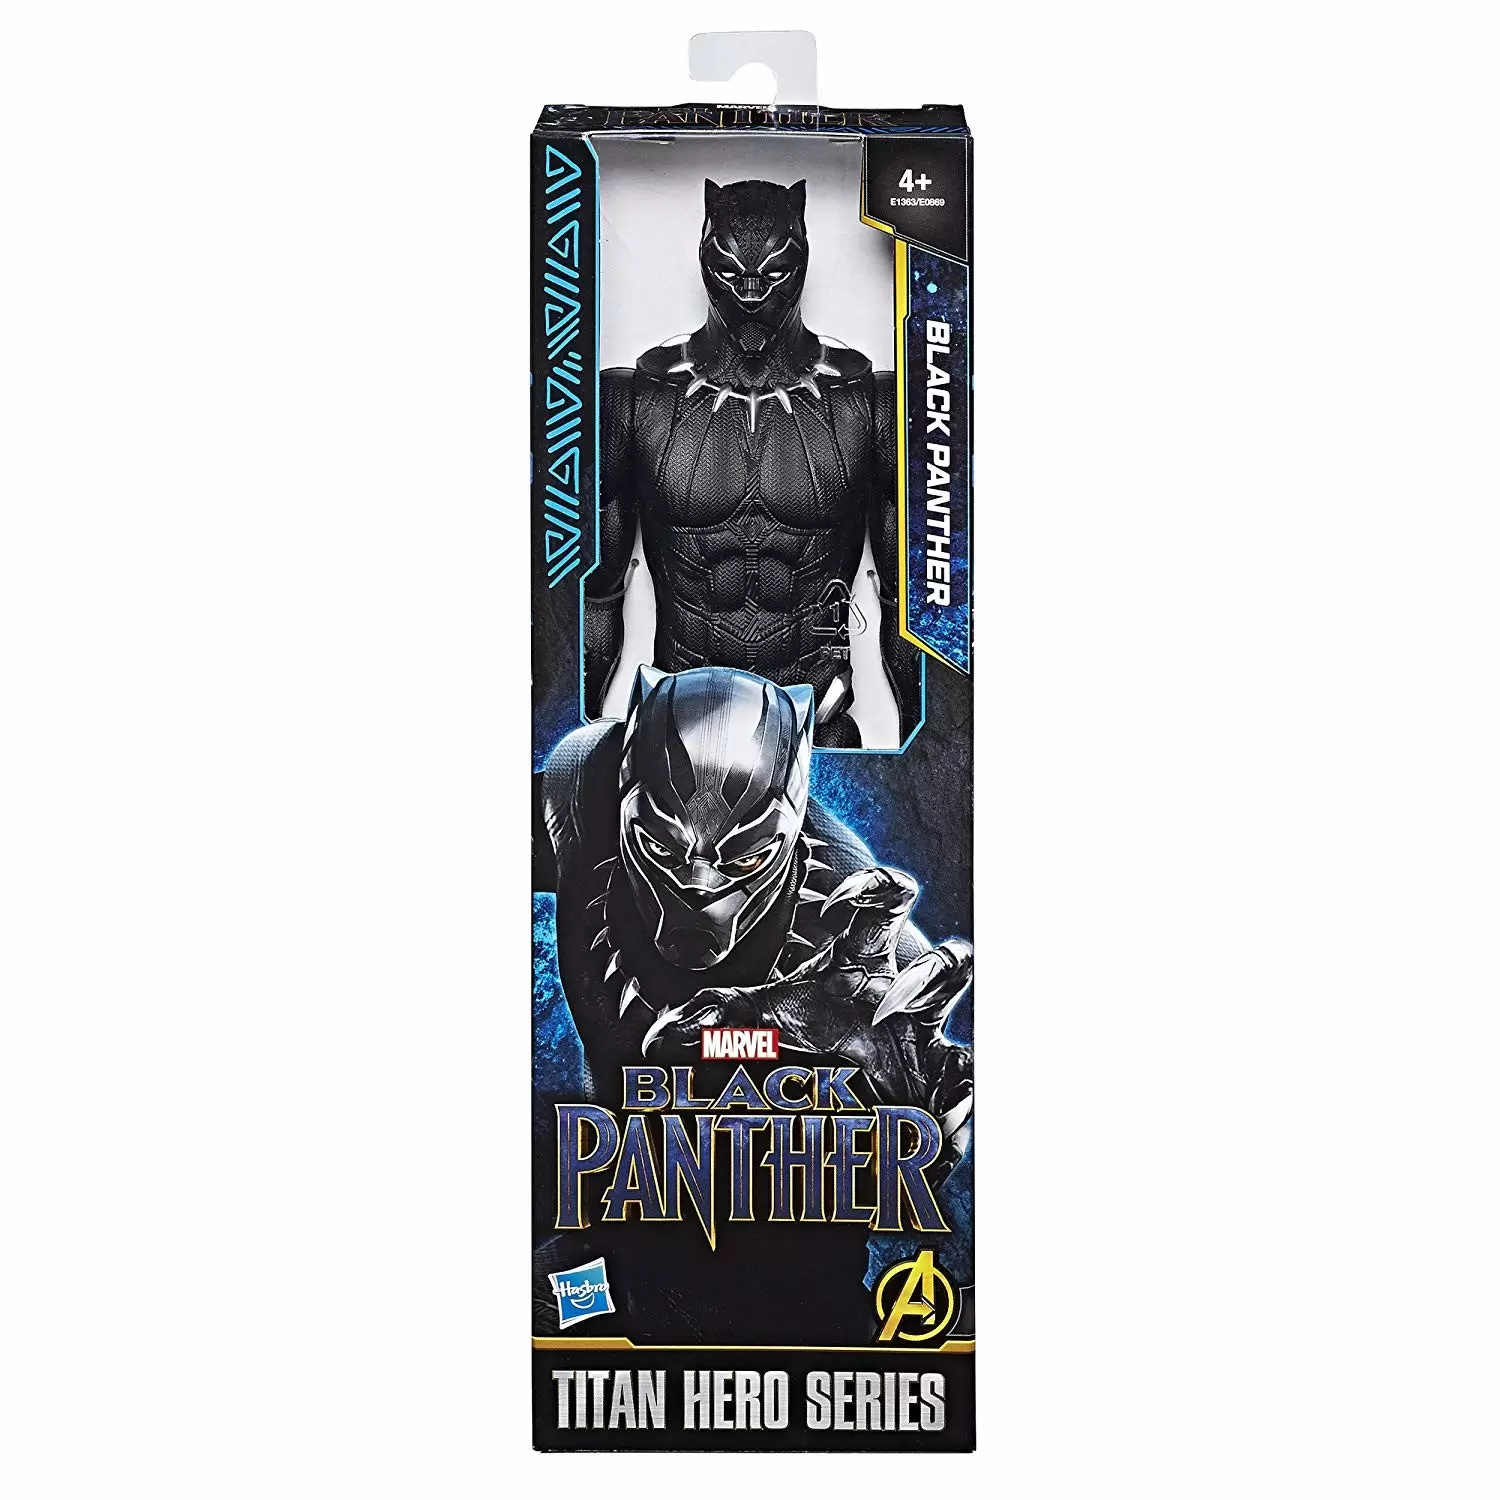 Titan Hero Series - Black Panther - Black Panther